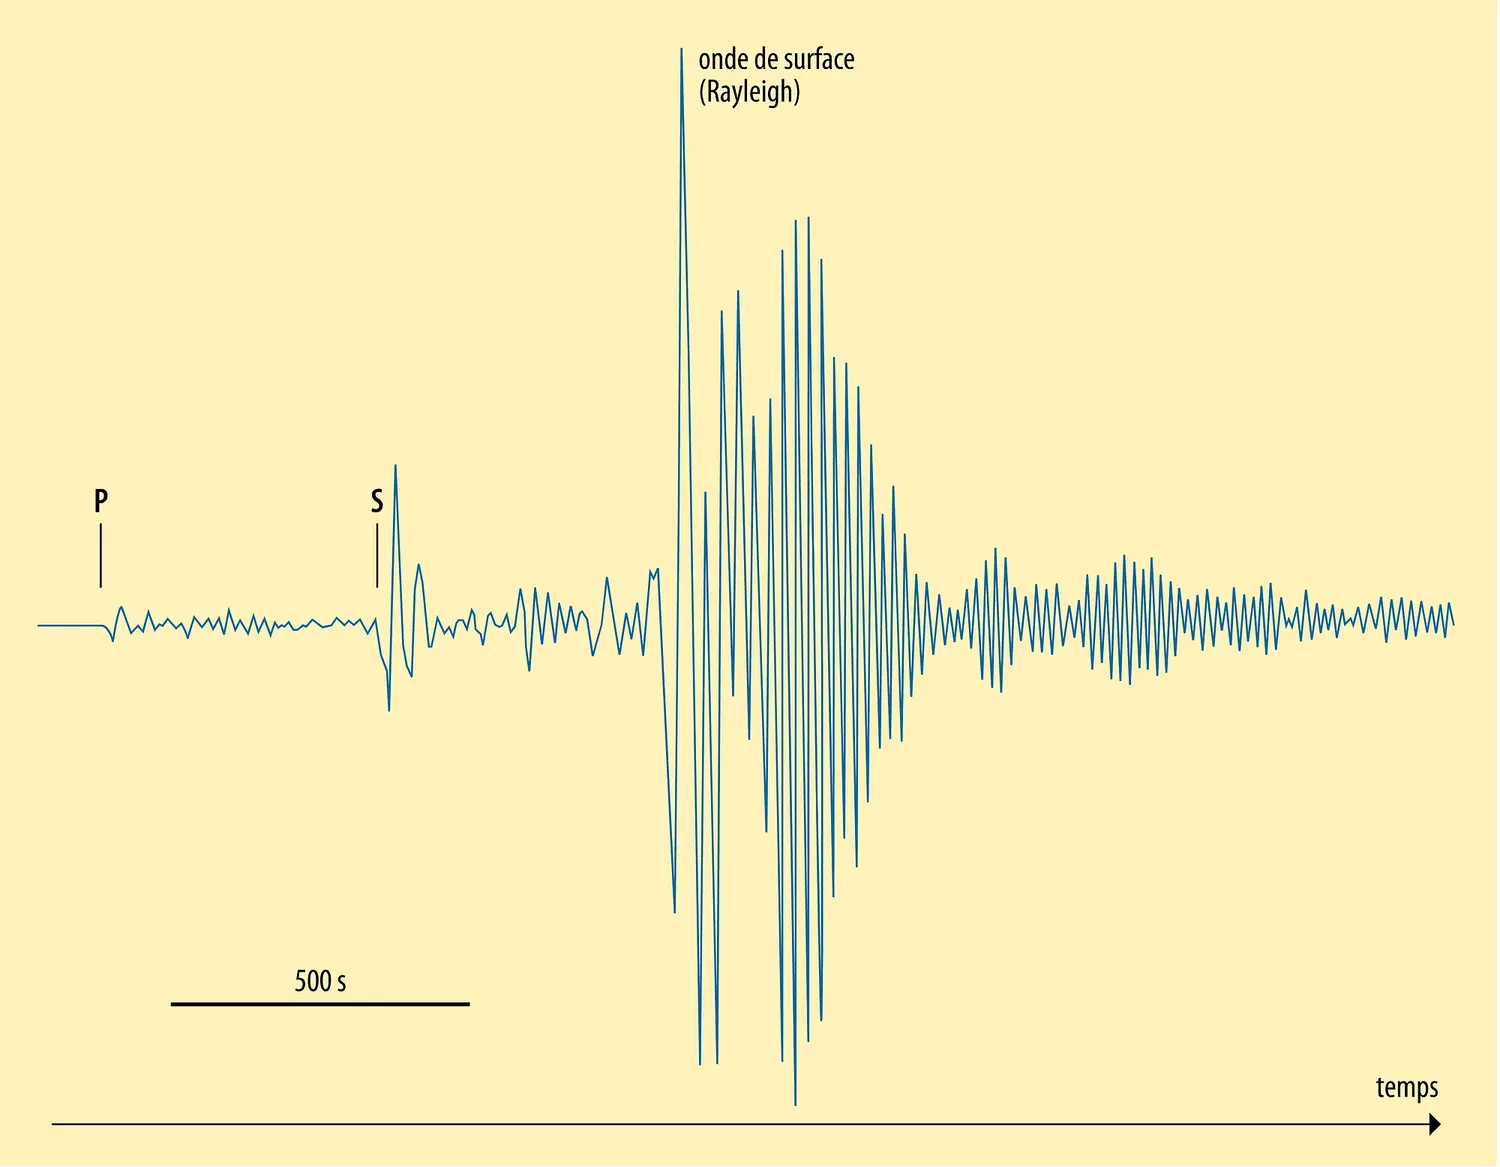 Différentes ondes sismiques